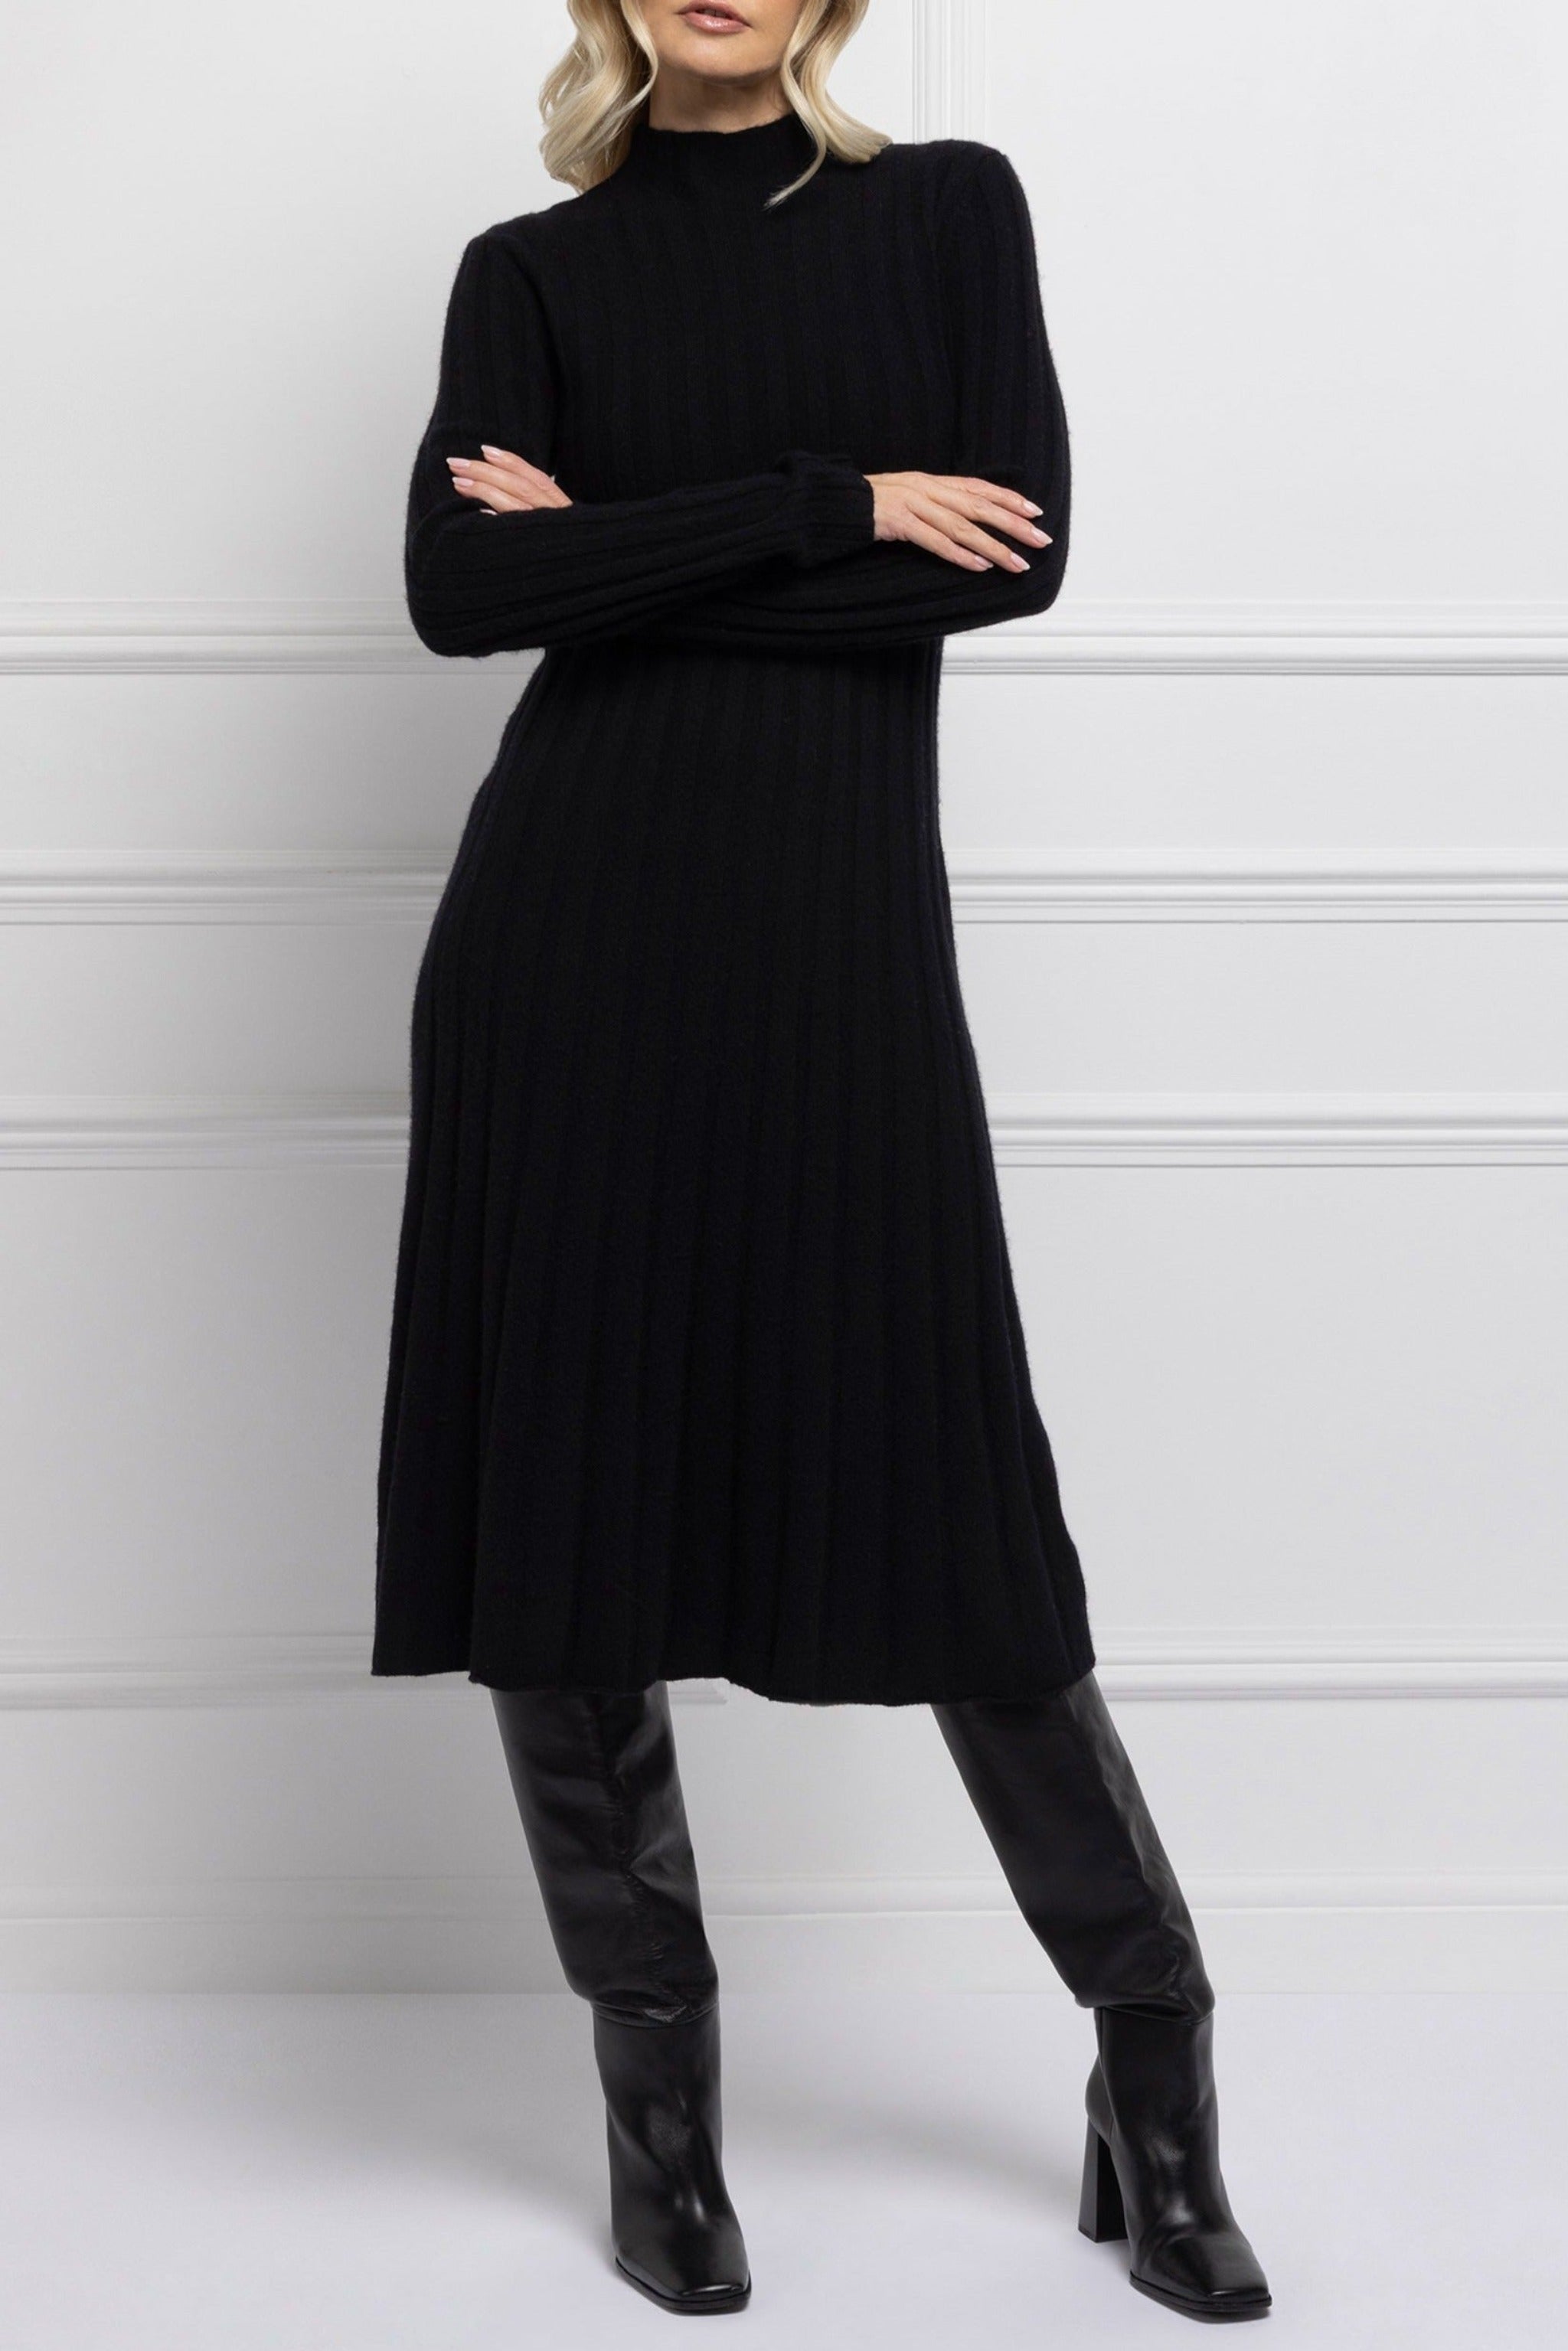 Pleat Knit Midi Dress (Black)